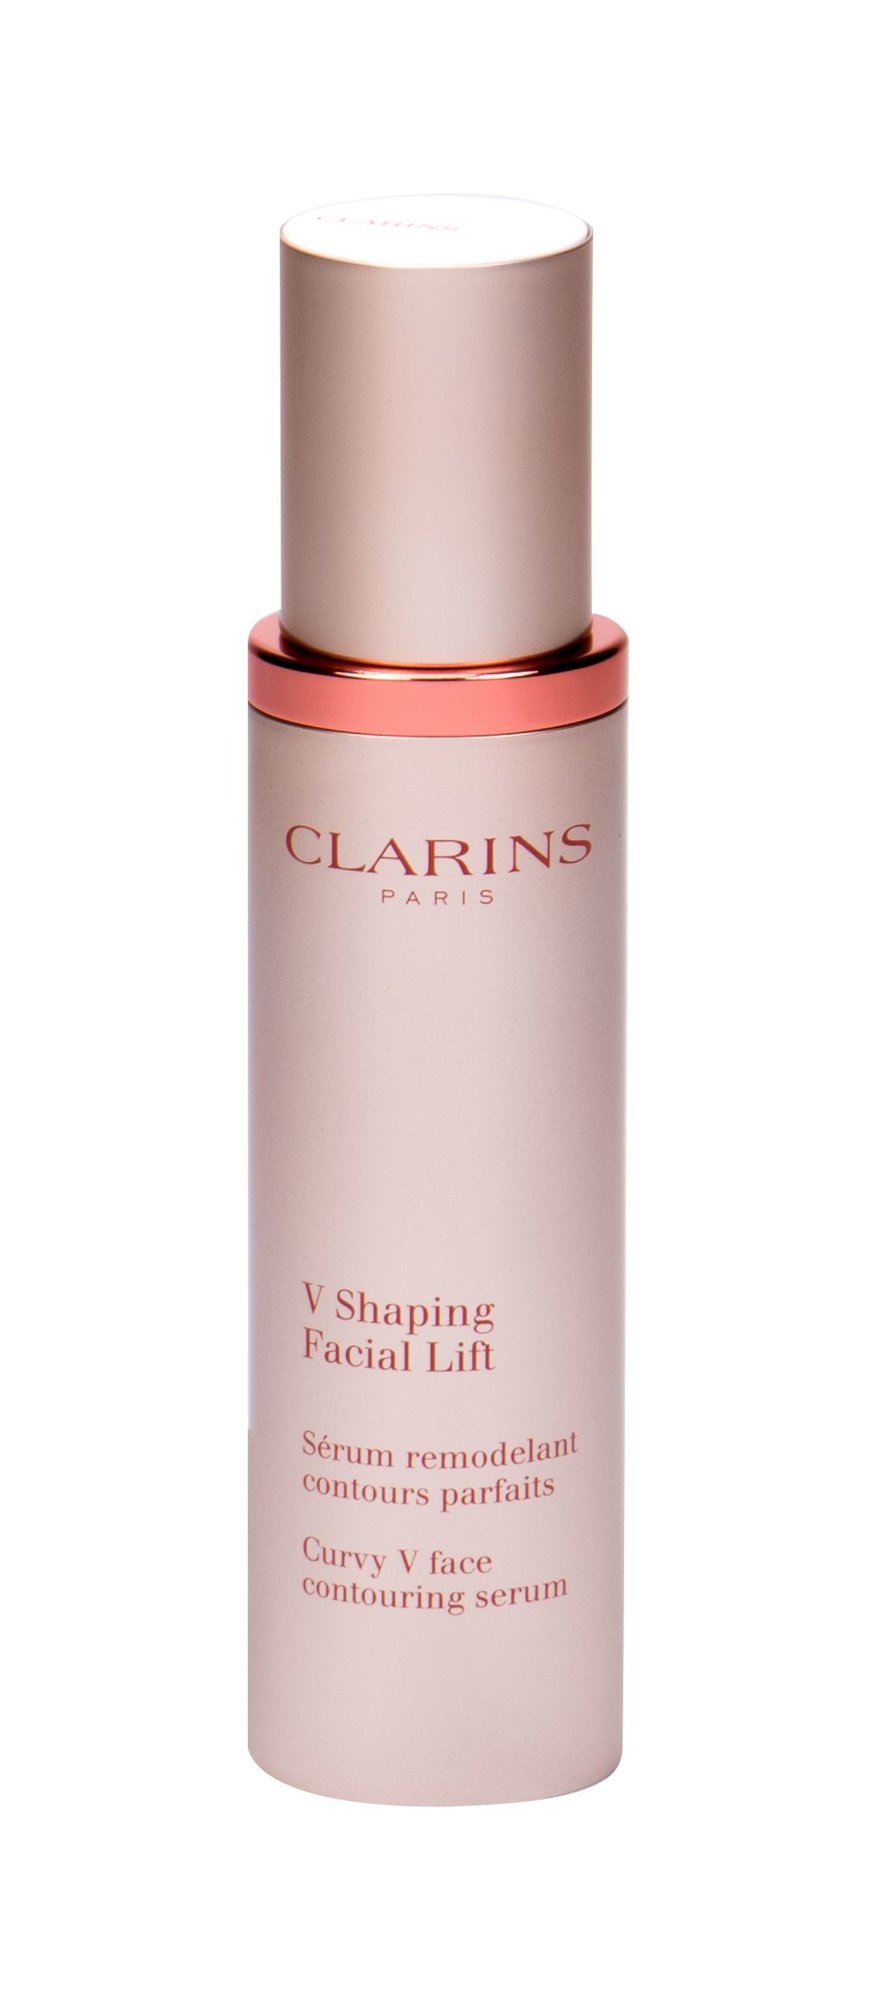 Clarins V Shaping Facial Lift